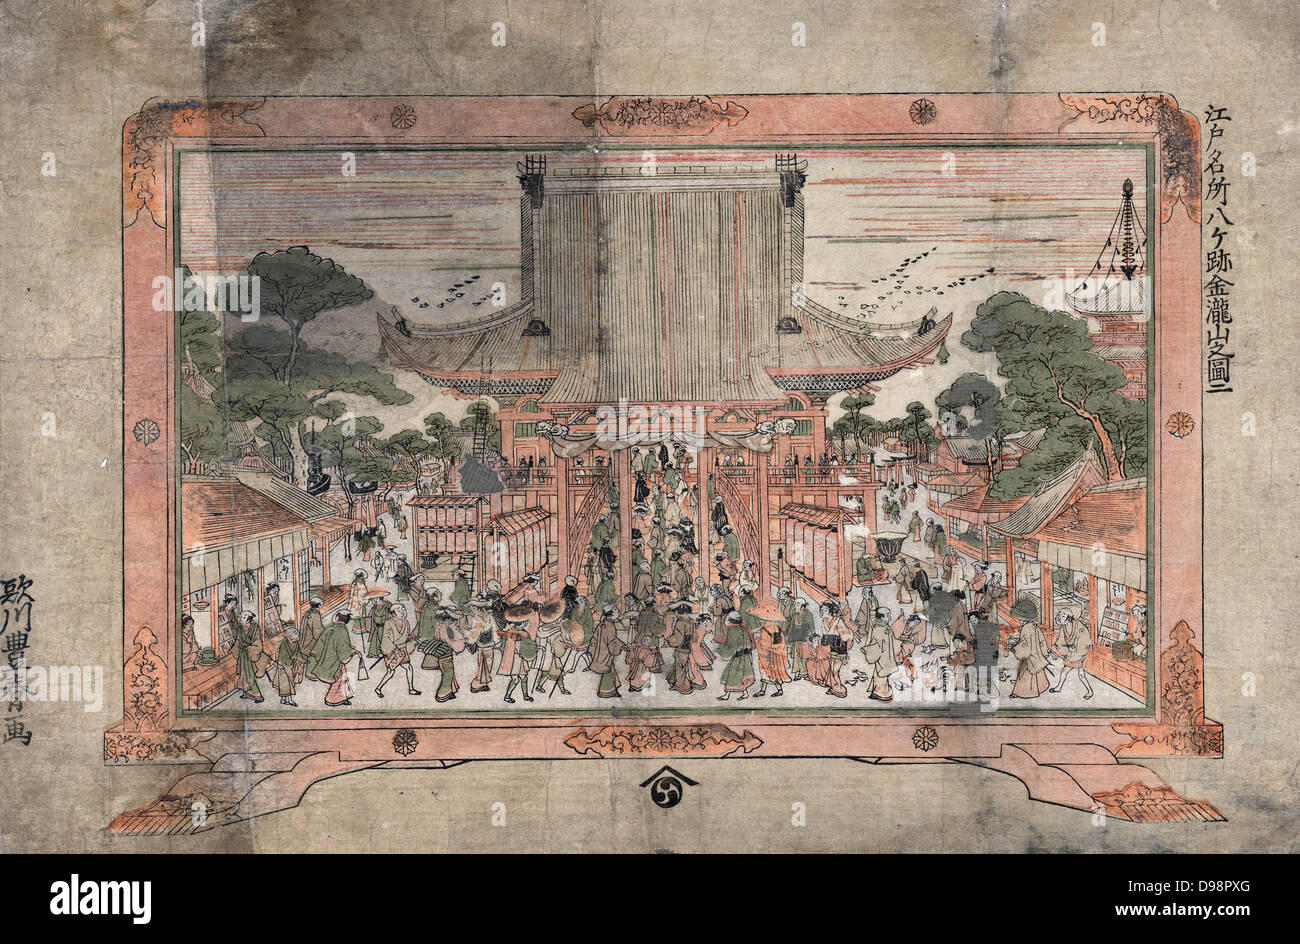 Chi entra in un grande tempio. Fuori ci sono bancarelle di trading. Stampa di un dipinto in un telaio con piedi, c1770. Utagawa Toyoharu (1735-1814) giapponese Ukiyo-e artista. Folla il culto della religione Foto Stock